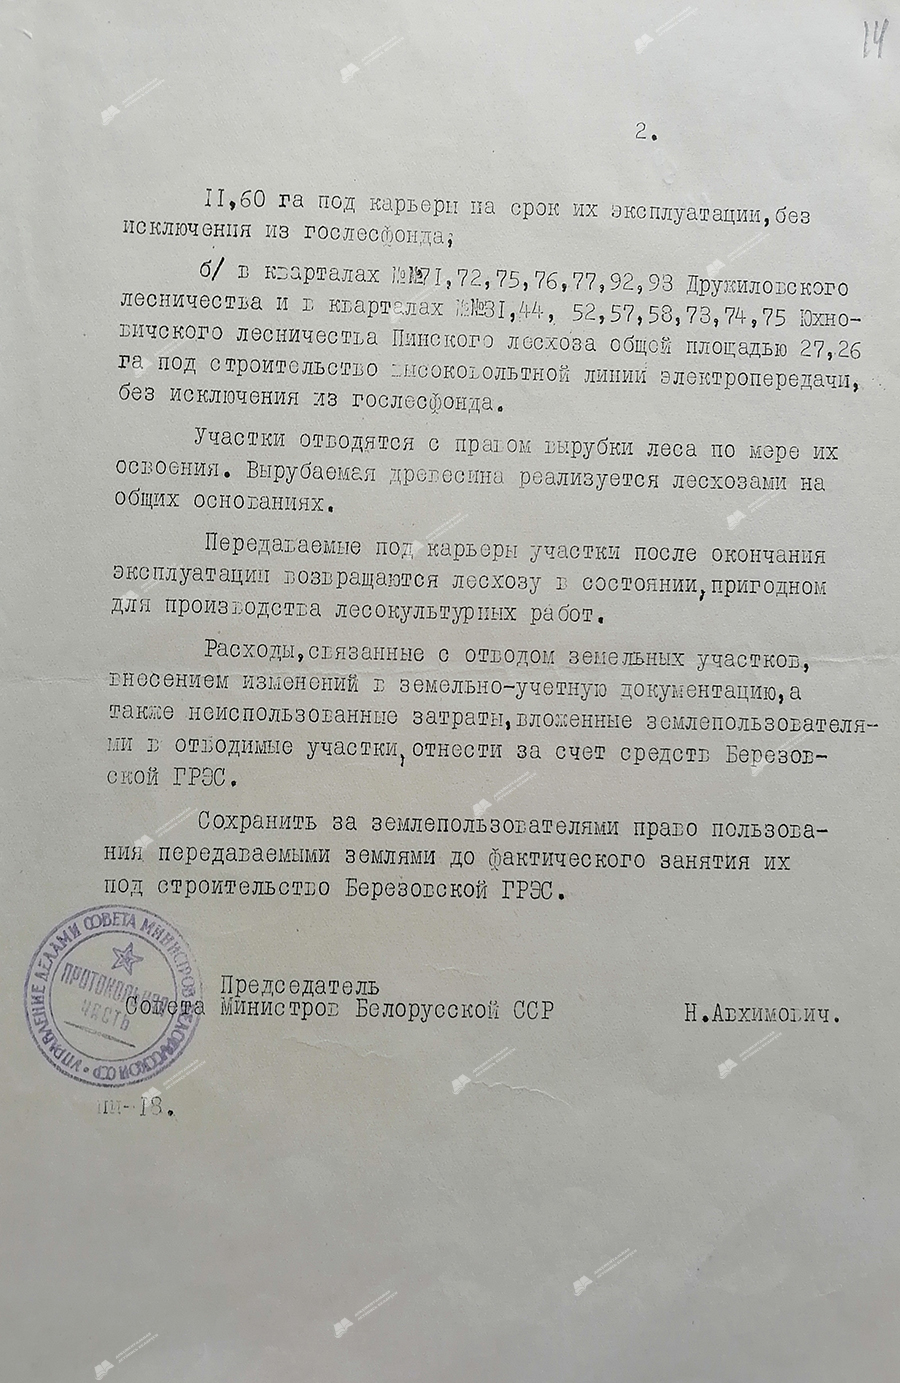 Verordnung Nr. 1782-r des Ministerrats der BSSR über die Zuteilung von Grundstücken für den Bau des staatlichen Bezirkskraftwerks Berezovskaya-с. 1